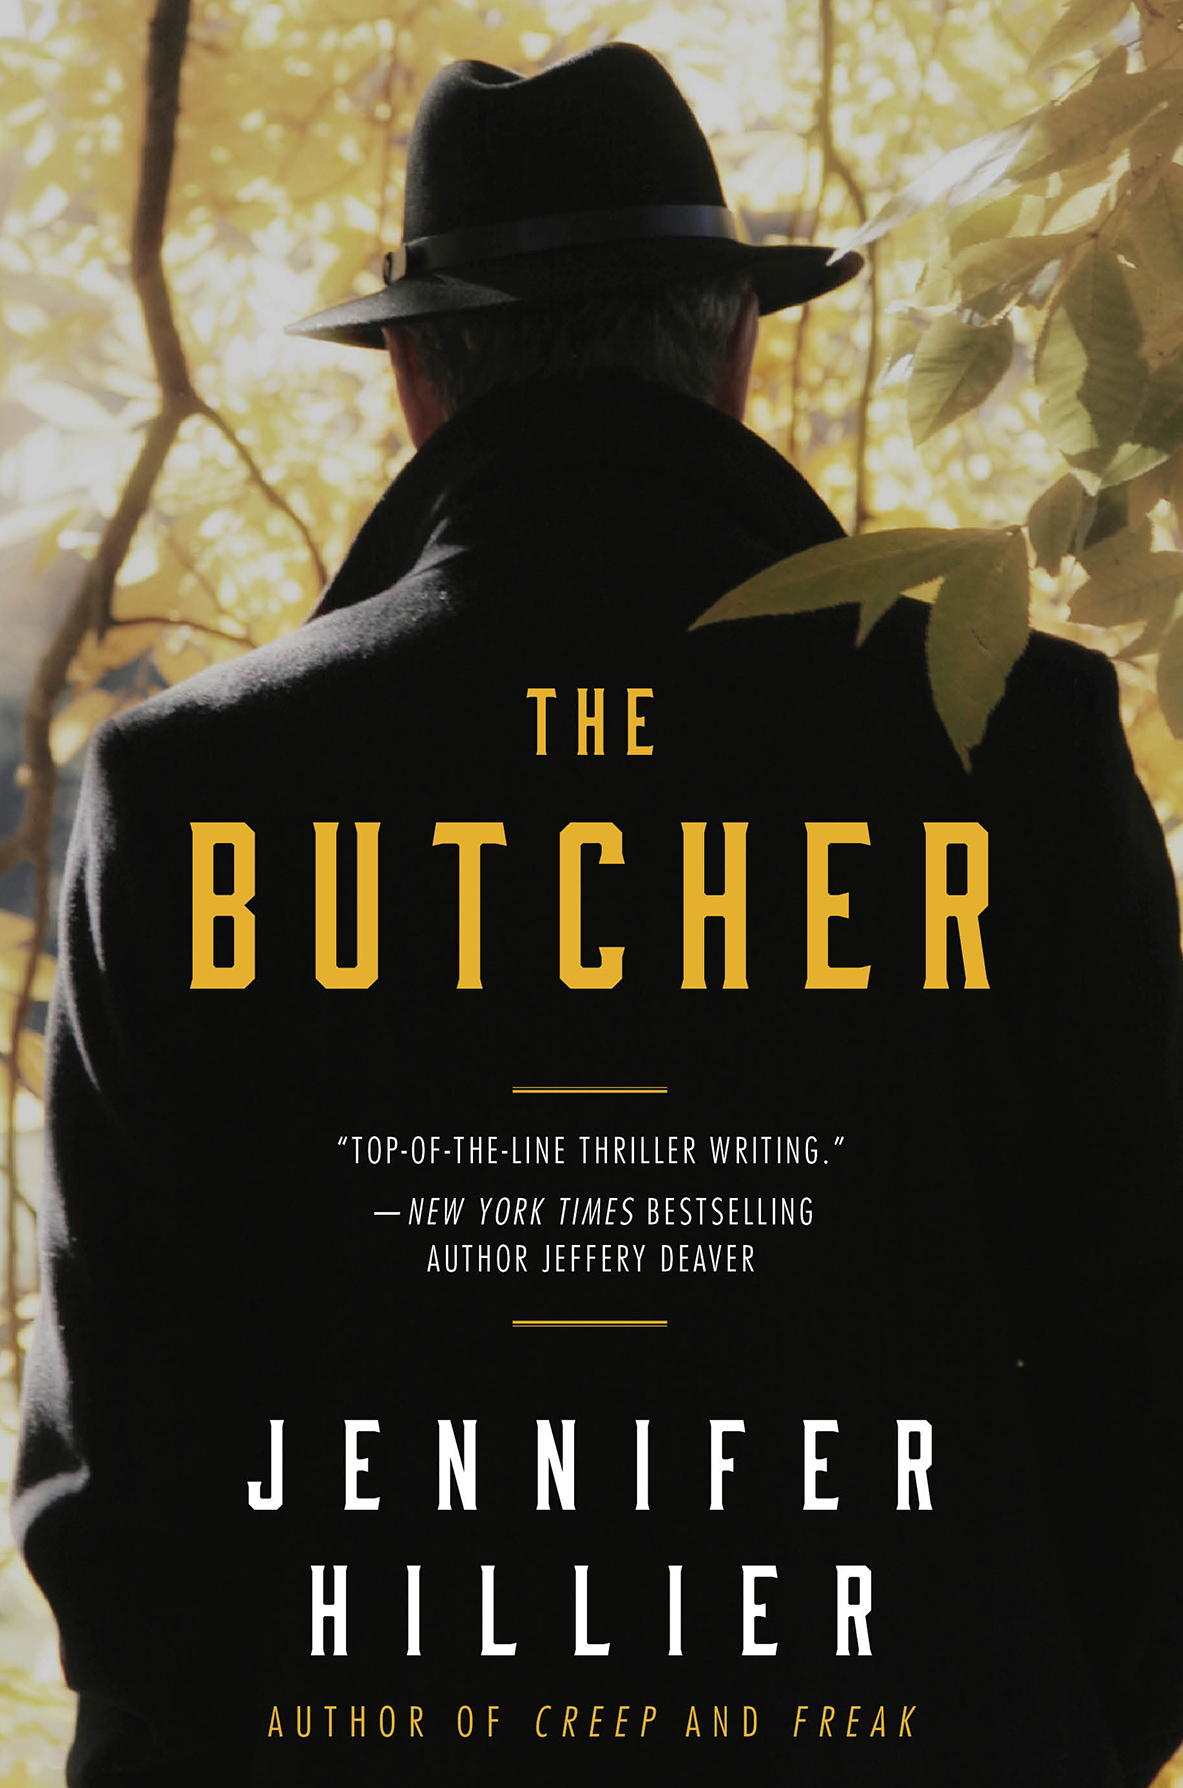 The Butcher by Jennifer Hillier